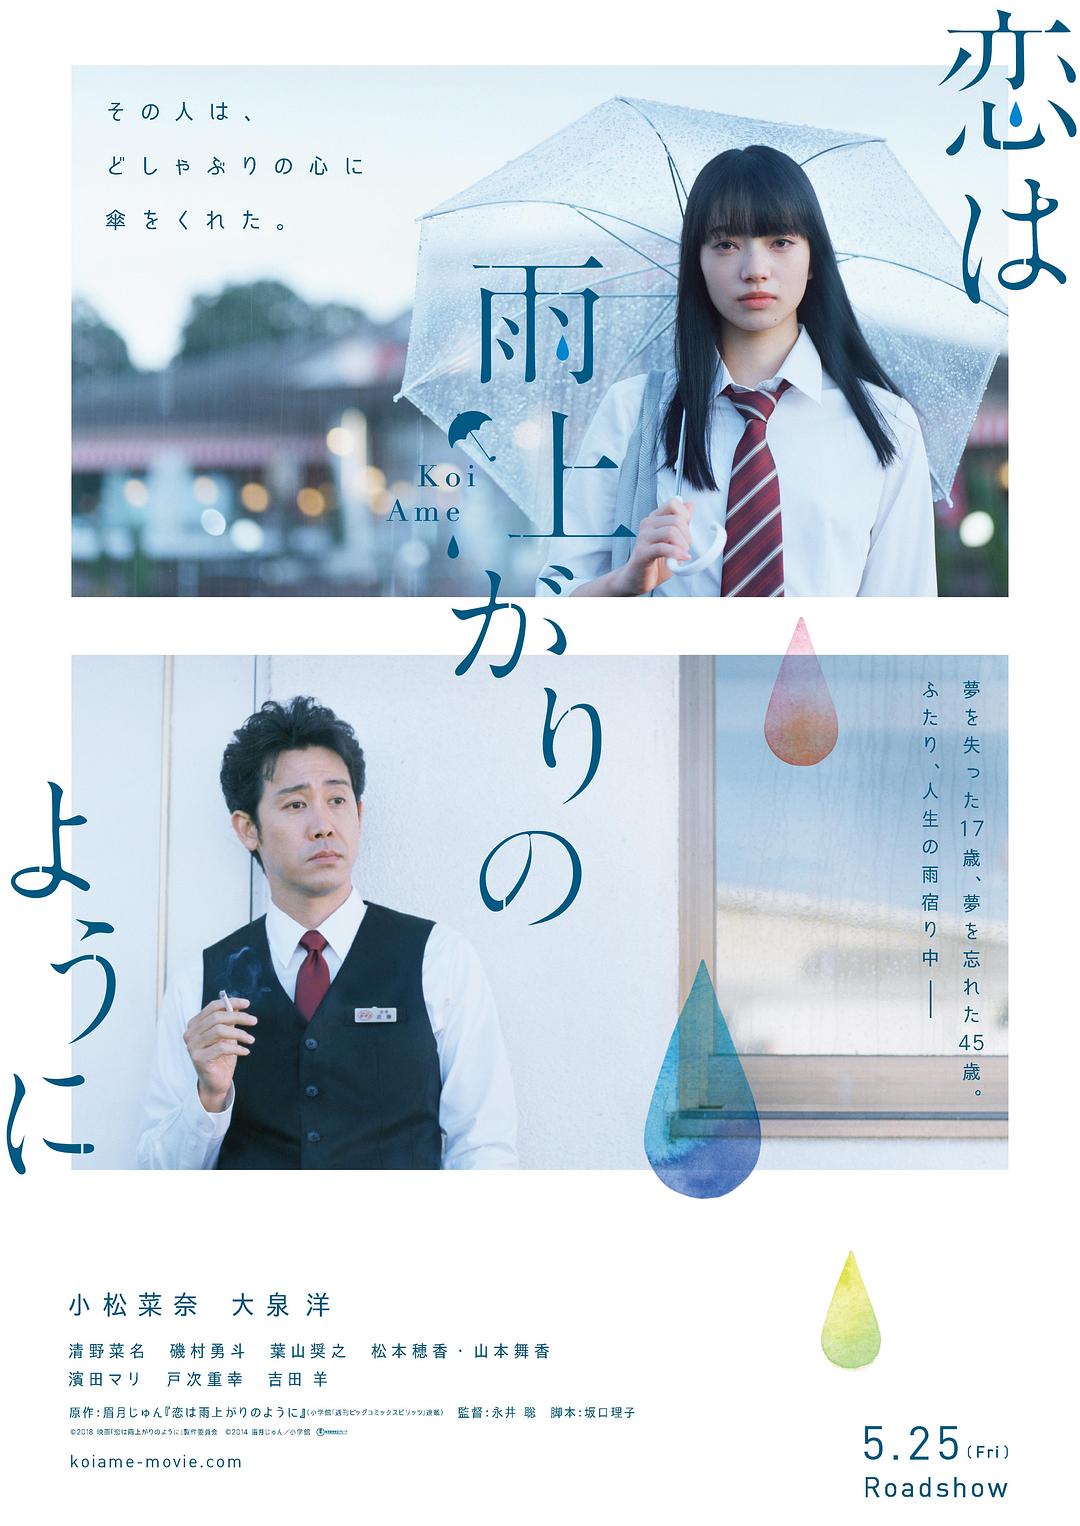 恋如雨止 After.The.Rain.2018.JAPANESE.1080p.BluRay.x264-iKiW 9.75GB-1.png